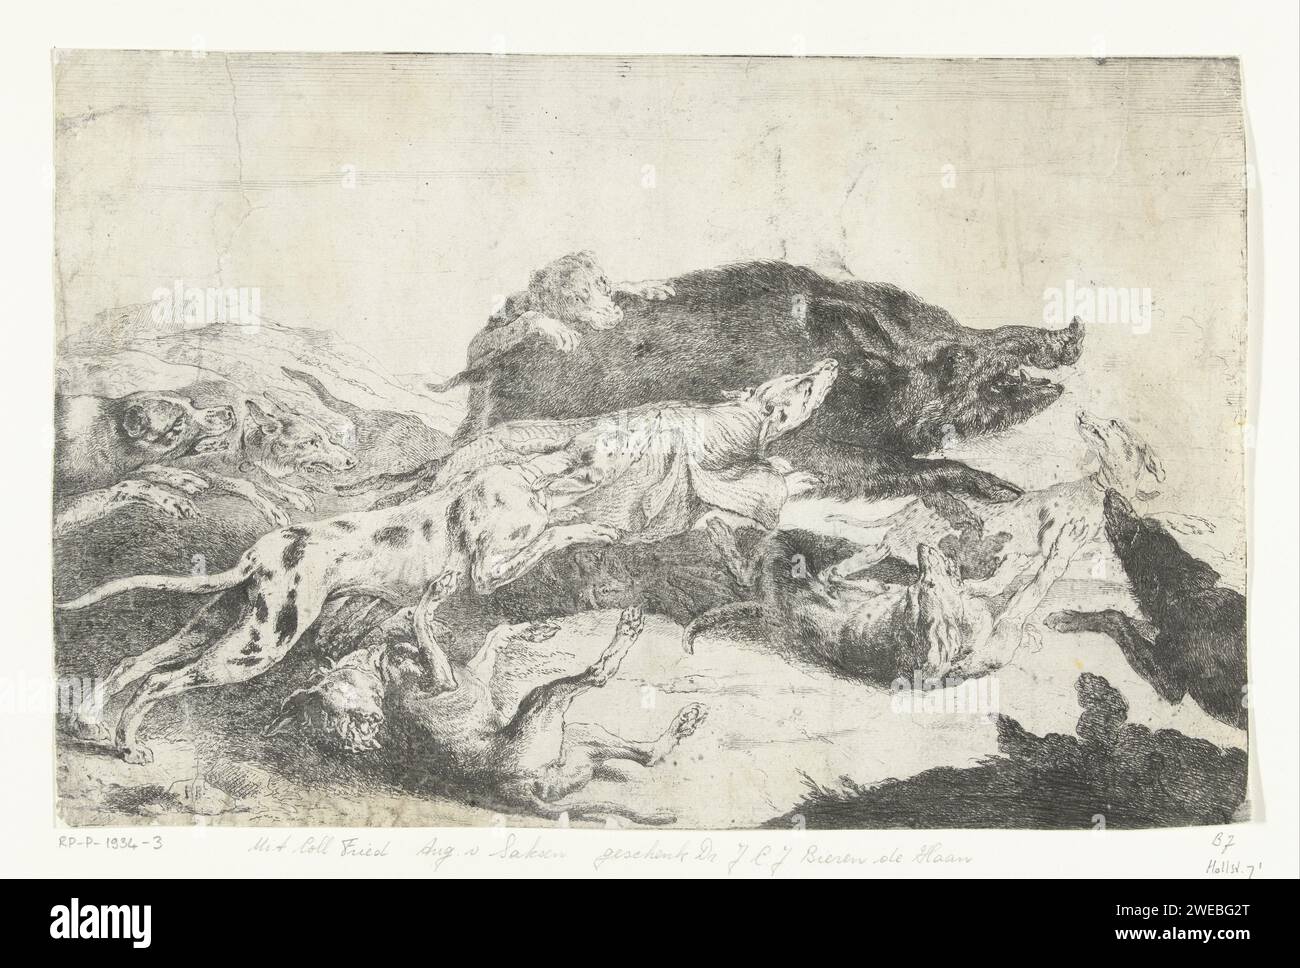 Les chiens chassent un sanglier, Peeter Boel, c. 1650 - c. 1674 imprimer Wildezwijnenjacht. Une meute de chiens conduit un sanglier. chasse au sanglier de gravure inconnue Banque D'Images